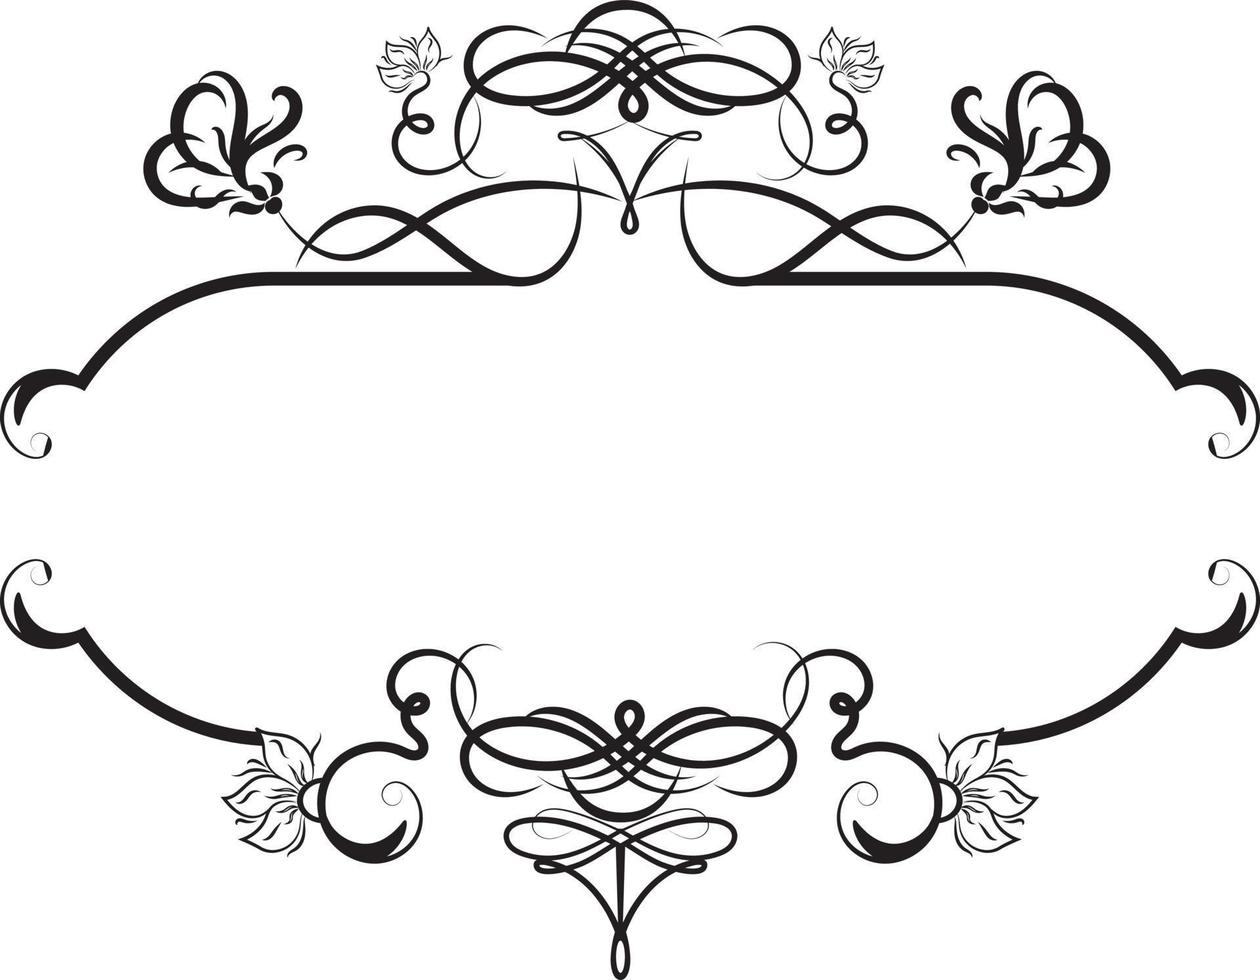 Schwarz-Weiß-Hochzeit dekoratives Element.eps vektor